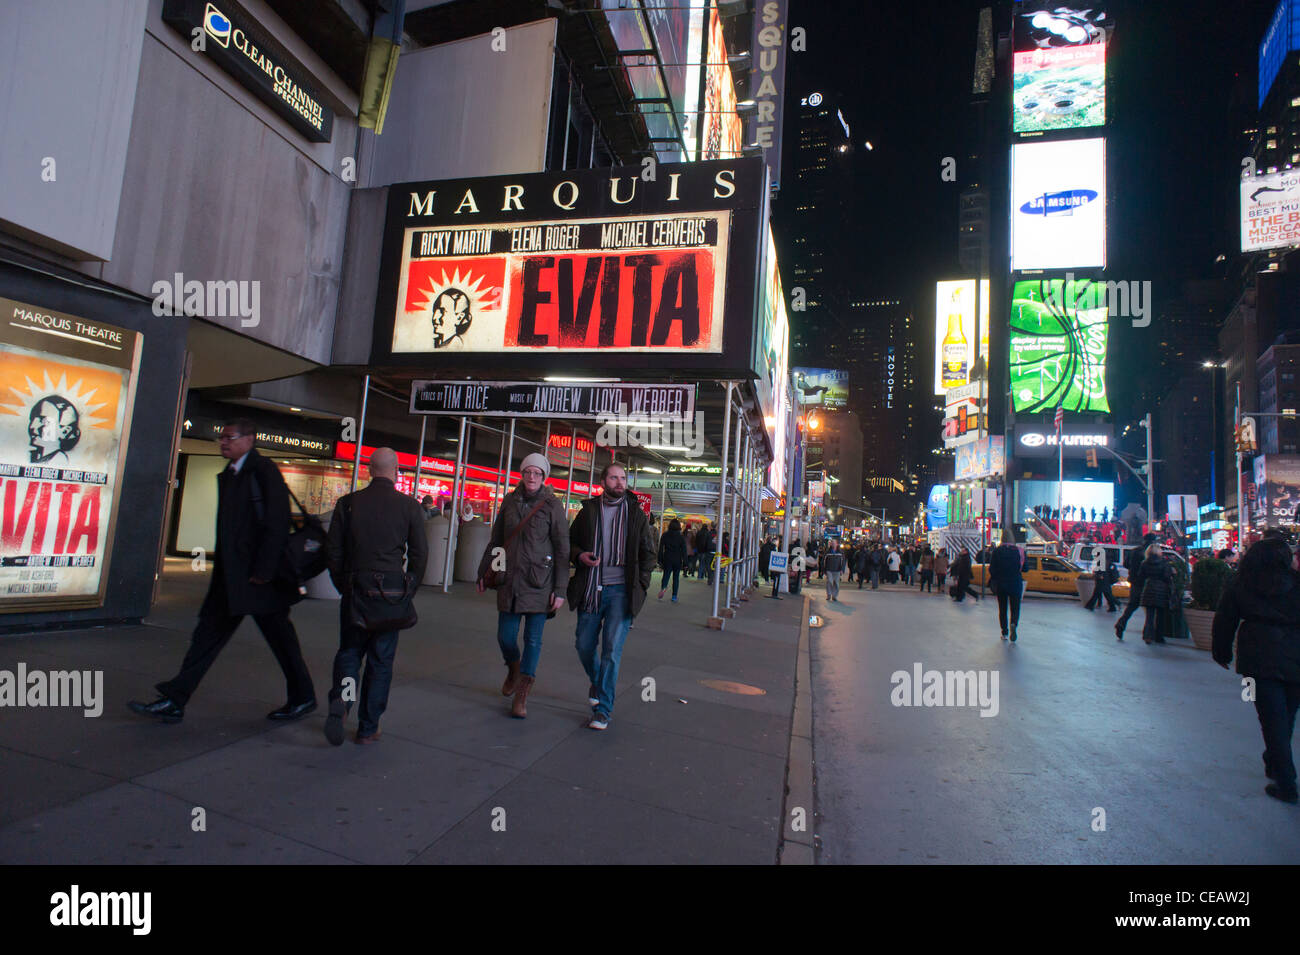 Der Marquis Theatre am Broadway, am Times Square in New York kündigt die bevorstehende Ankunft der Wiederbelebung des musical Evita Stockfoto